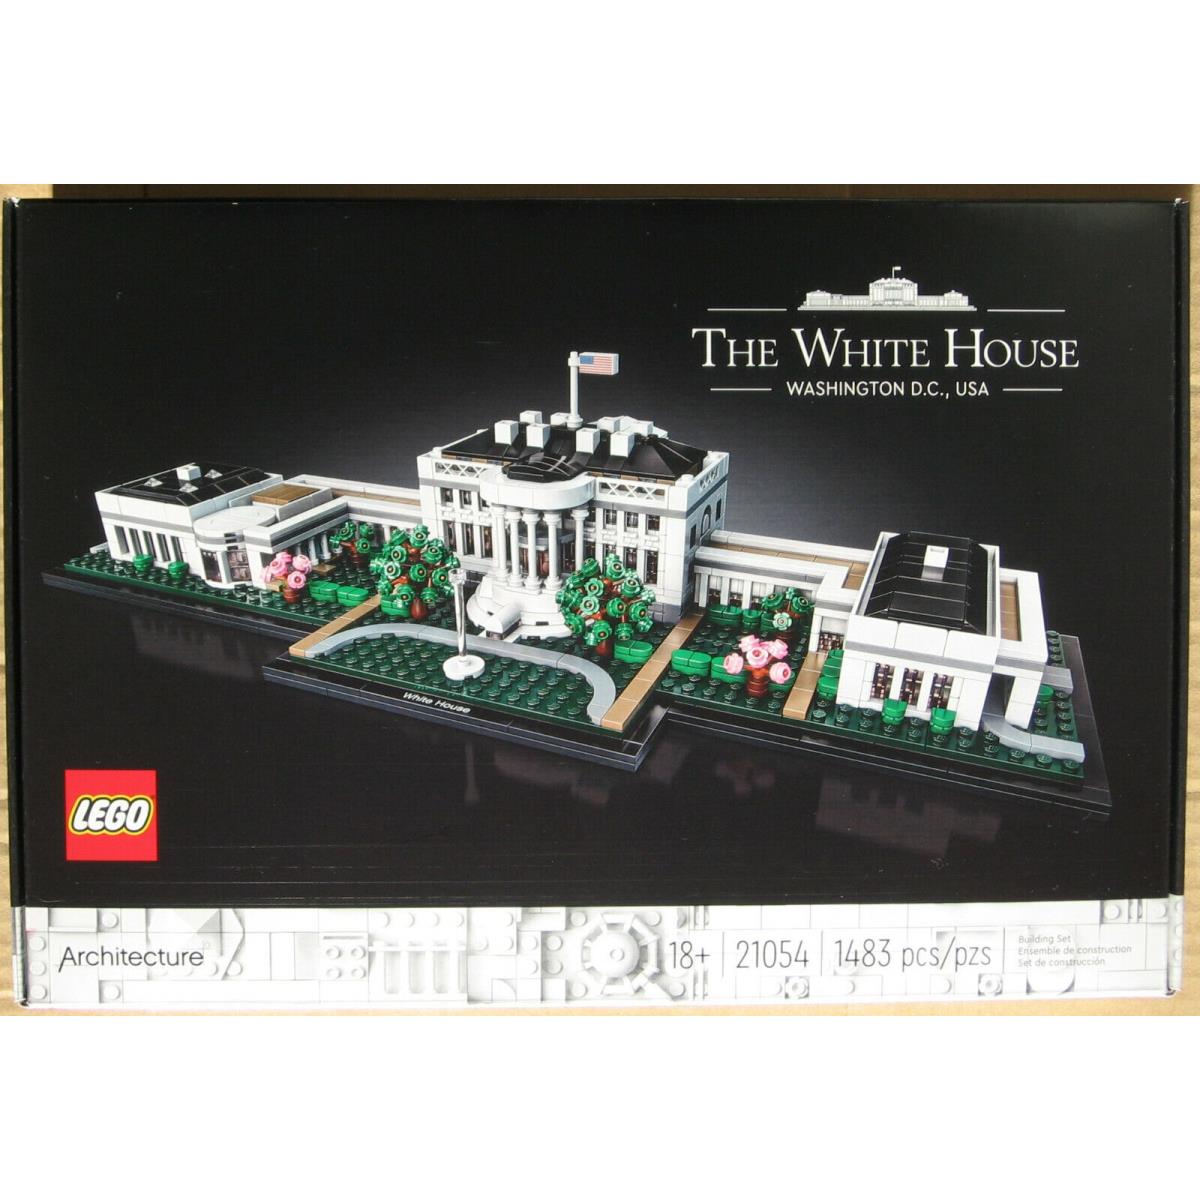 Lego The White House 21054 Architecture Washington DC Usa President